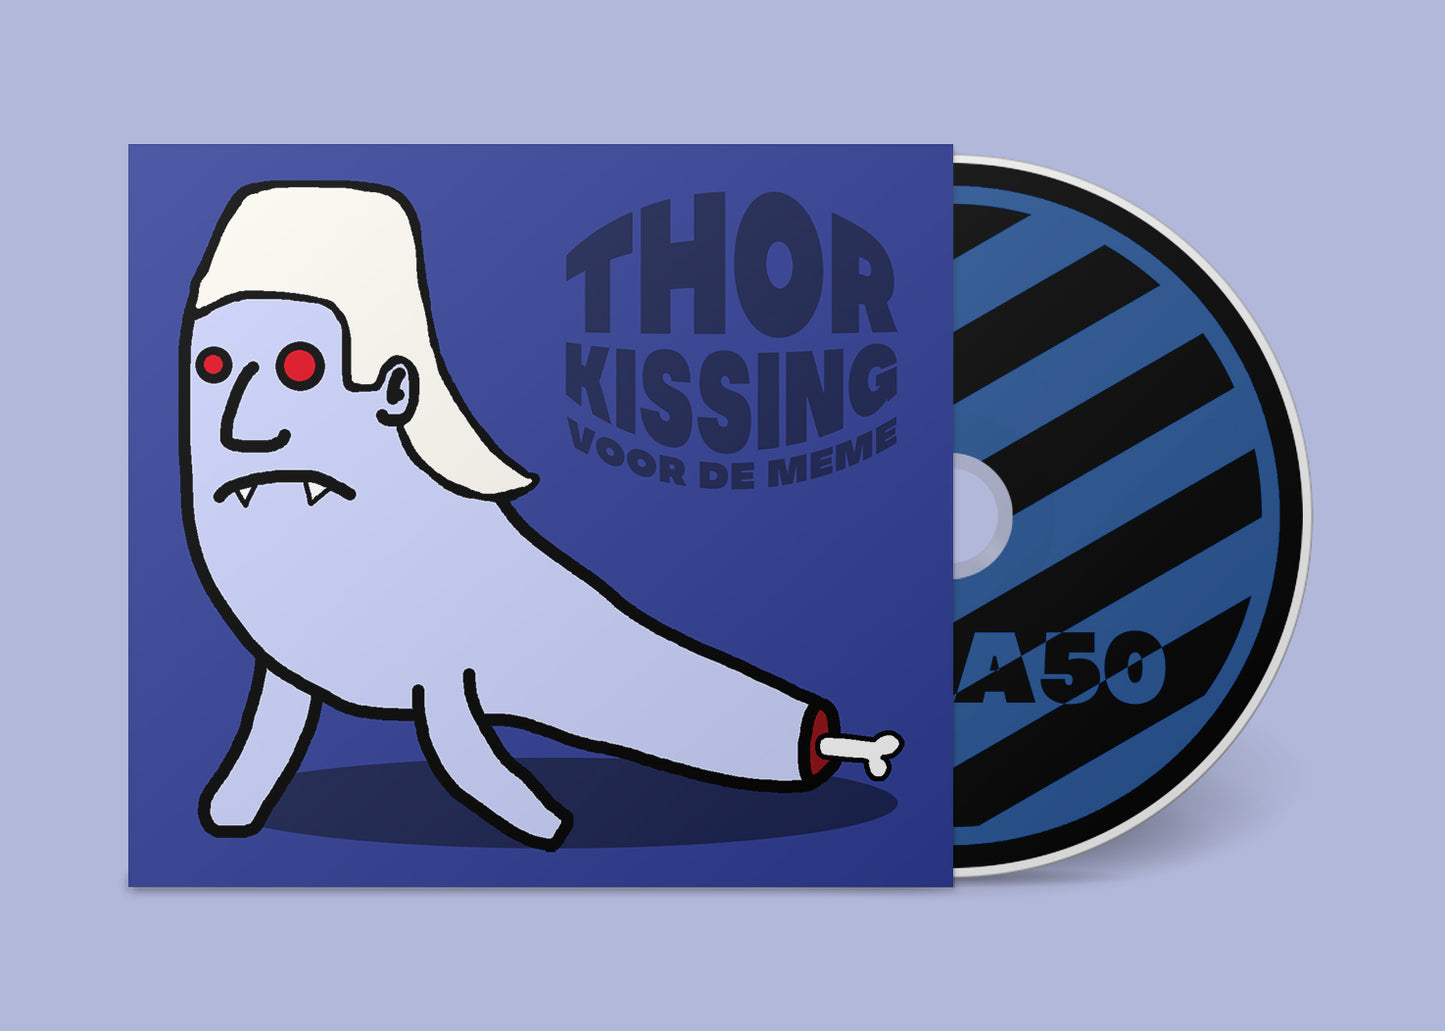 Thor Kissing - Voor de meme (CD)